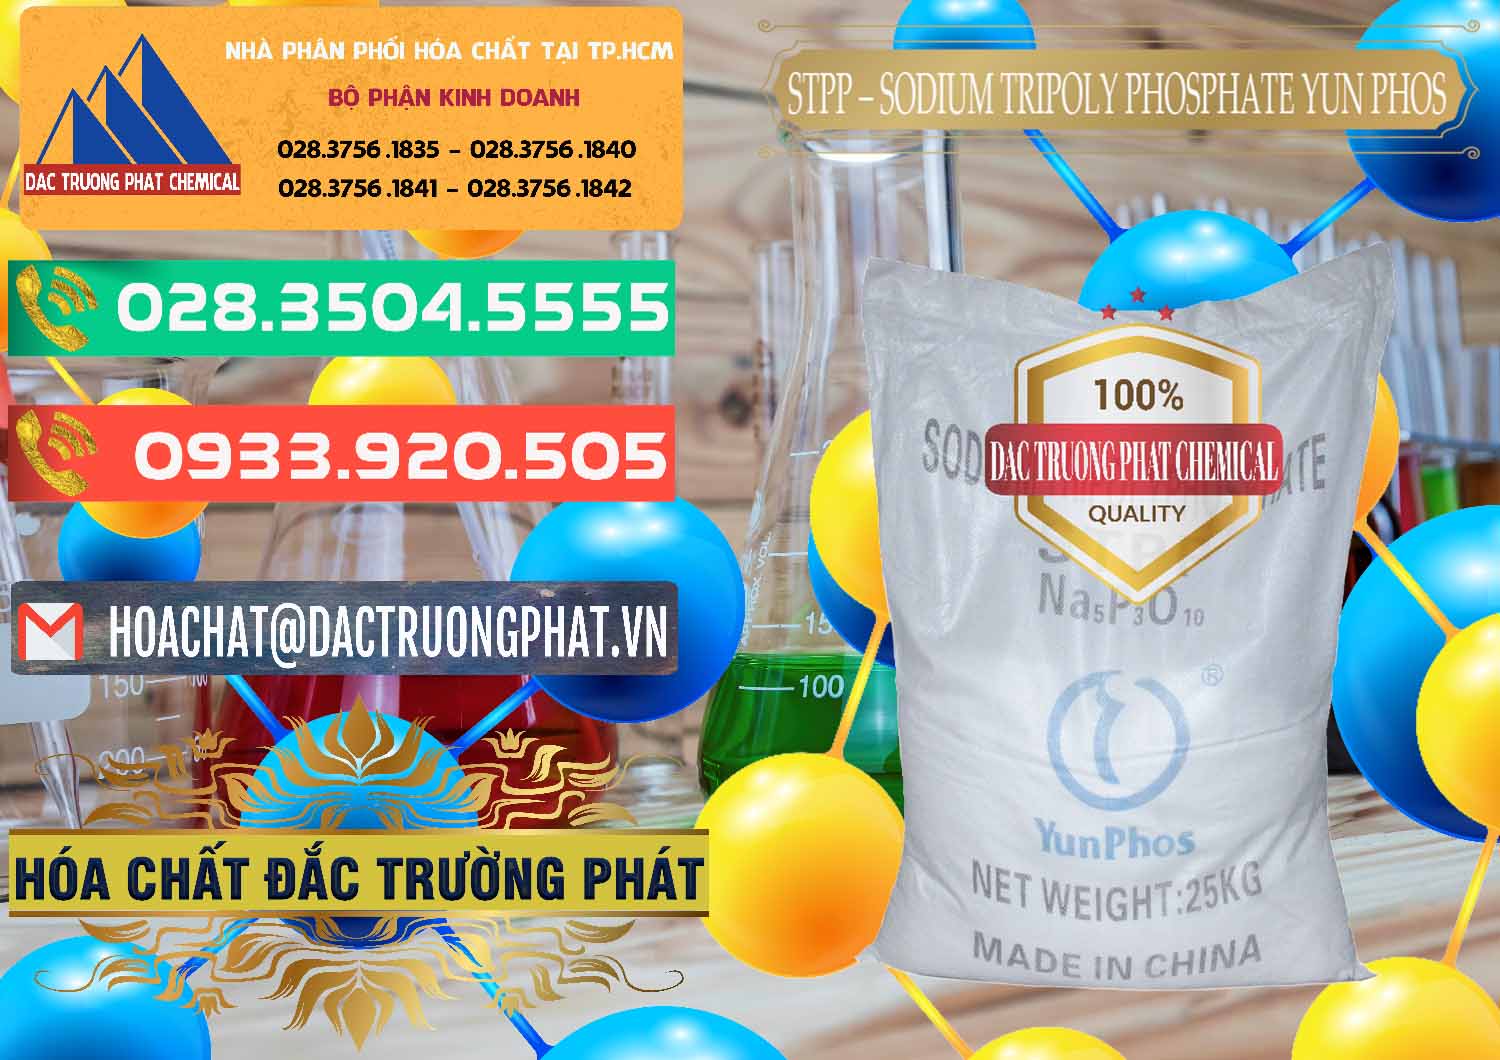 Nhà nhập khẩu - bán Sodium Tripoly Phosphate - STPP Yun Phos Trung Quốc China - 0153 - Công ty kinh doanh & phân phối hóa chất tại TP.HCM - congtyhoachat.com.vn